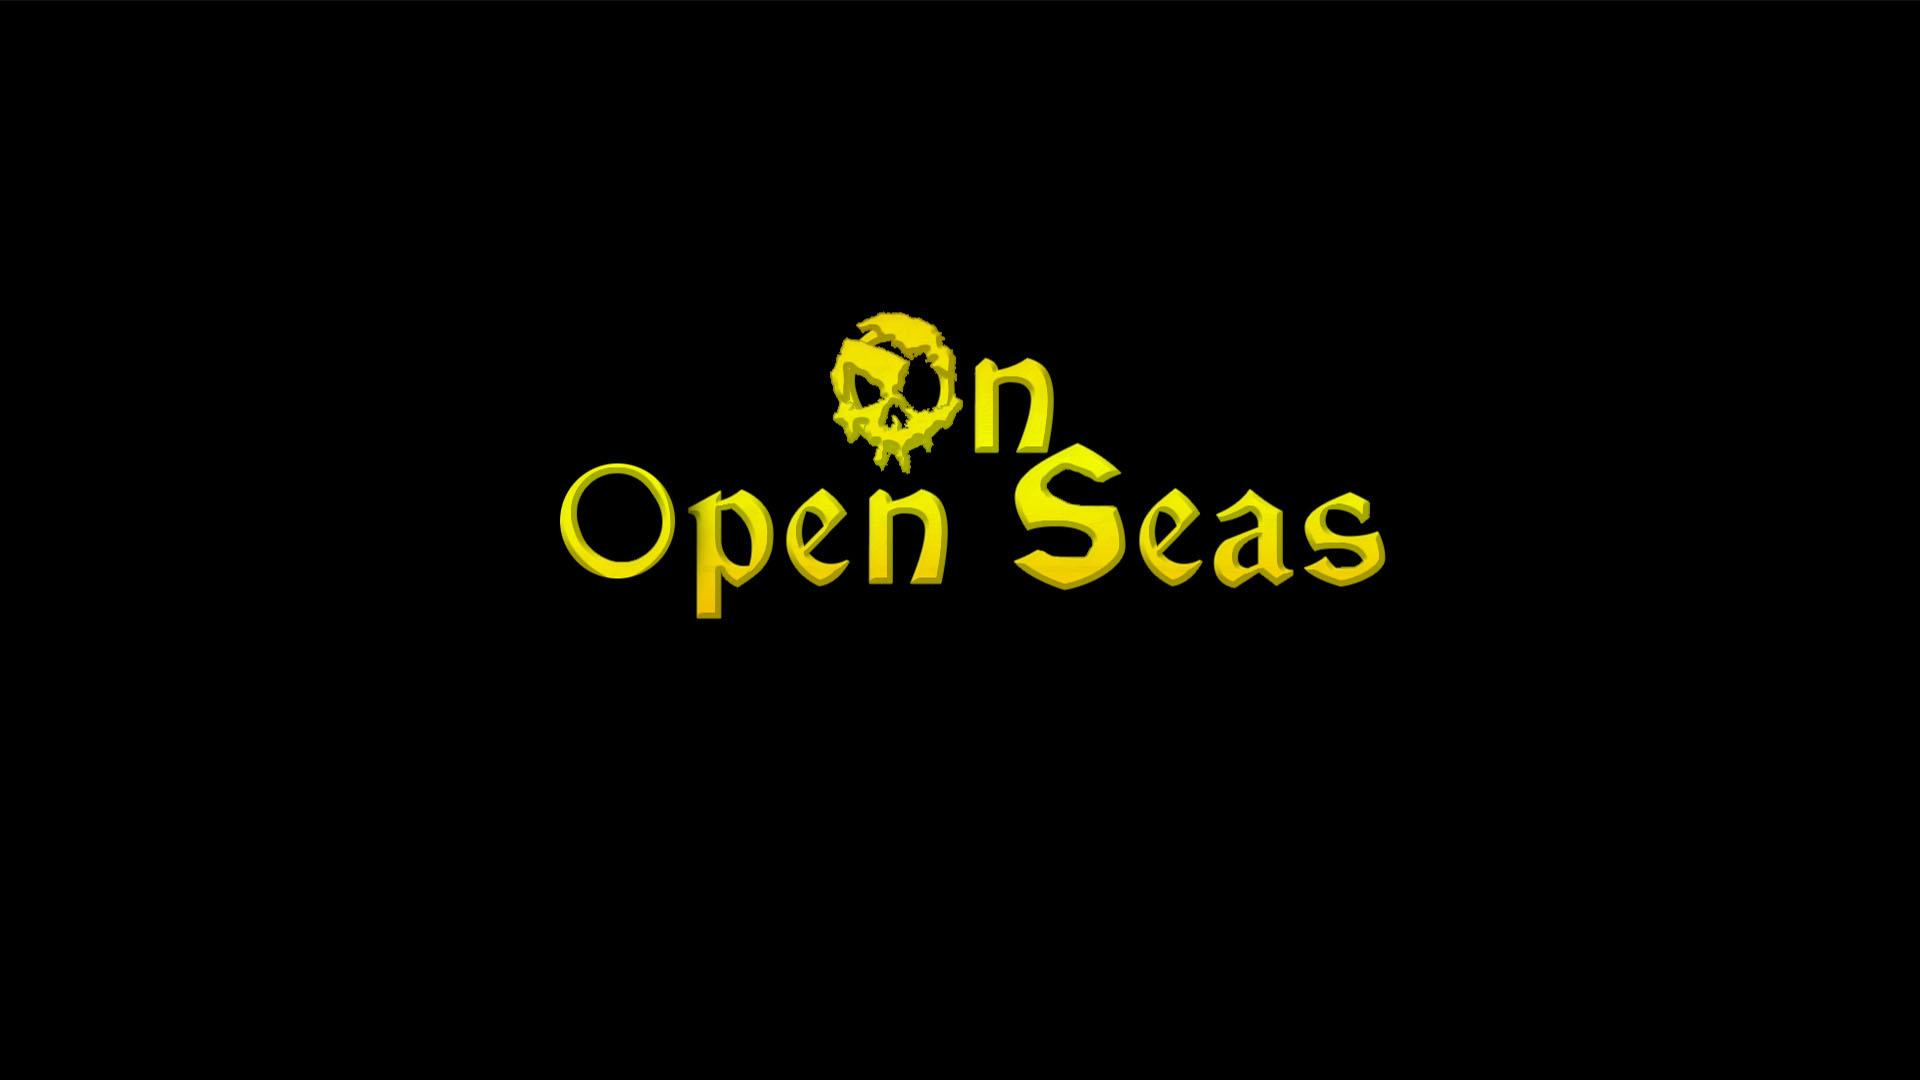 HoD: On open seas